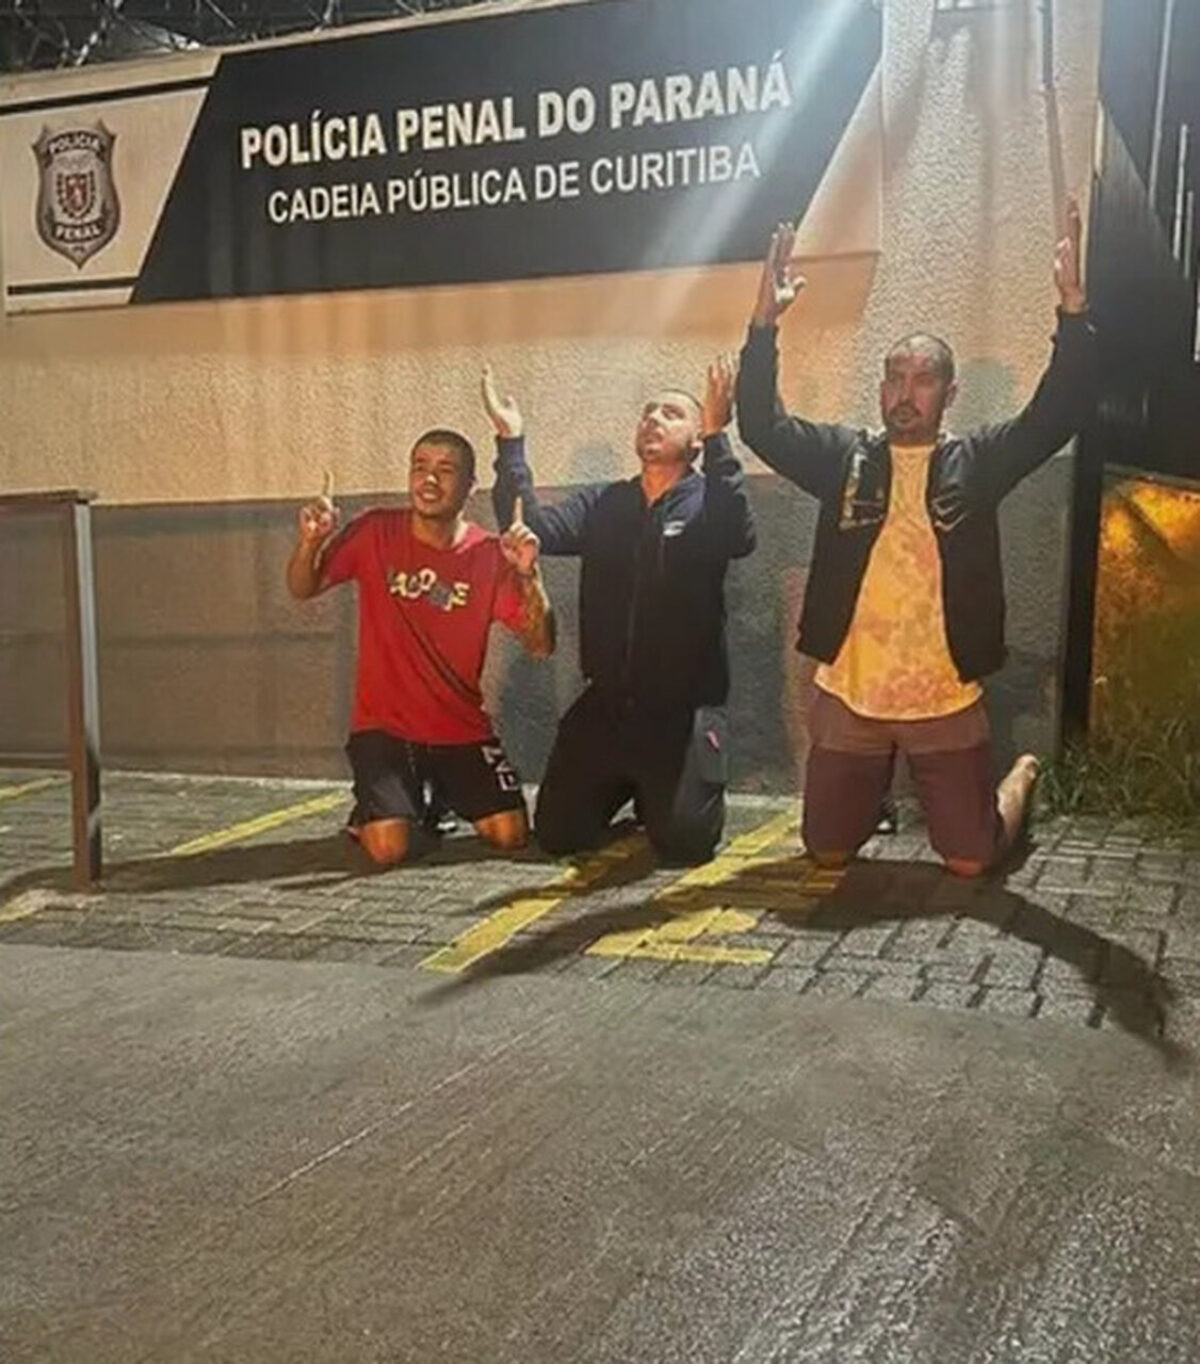 De motoboy a proprietário de carros de luxo: veja como agia grupo de  influenciadores do 'Jogo do Tigre' preso no Paraná, Fantástico